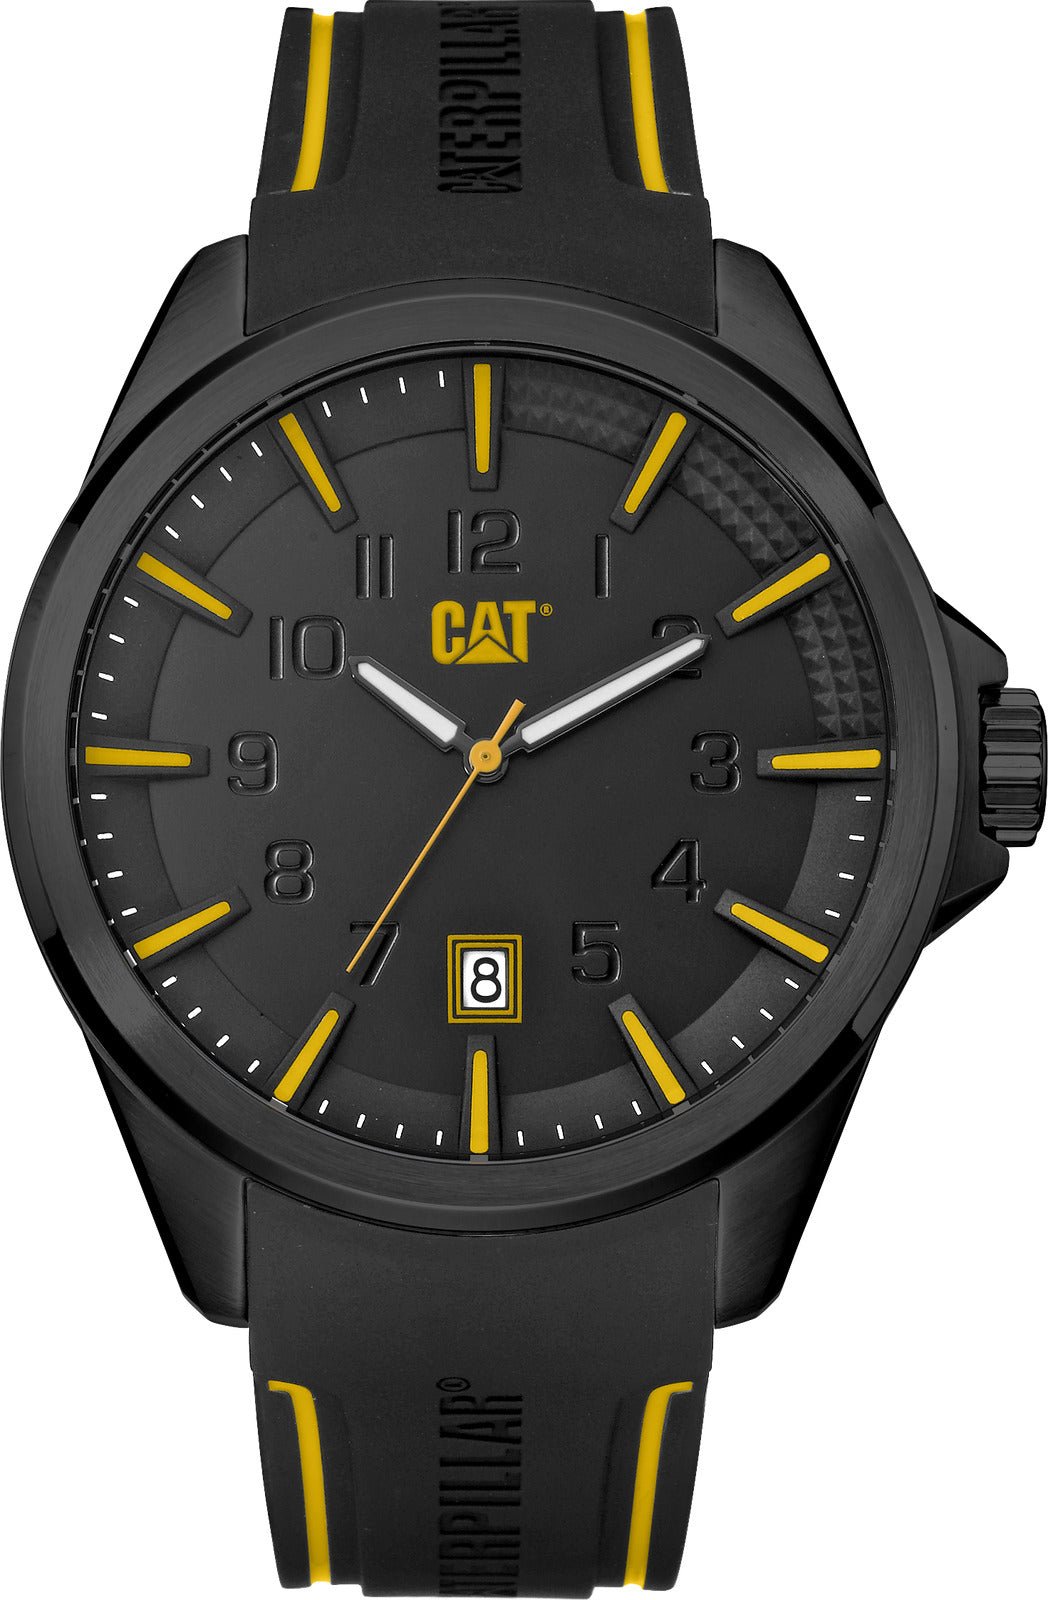 Reloj Cat Drive Black Yellow - CAT SERVICE PERU S.A.C.